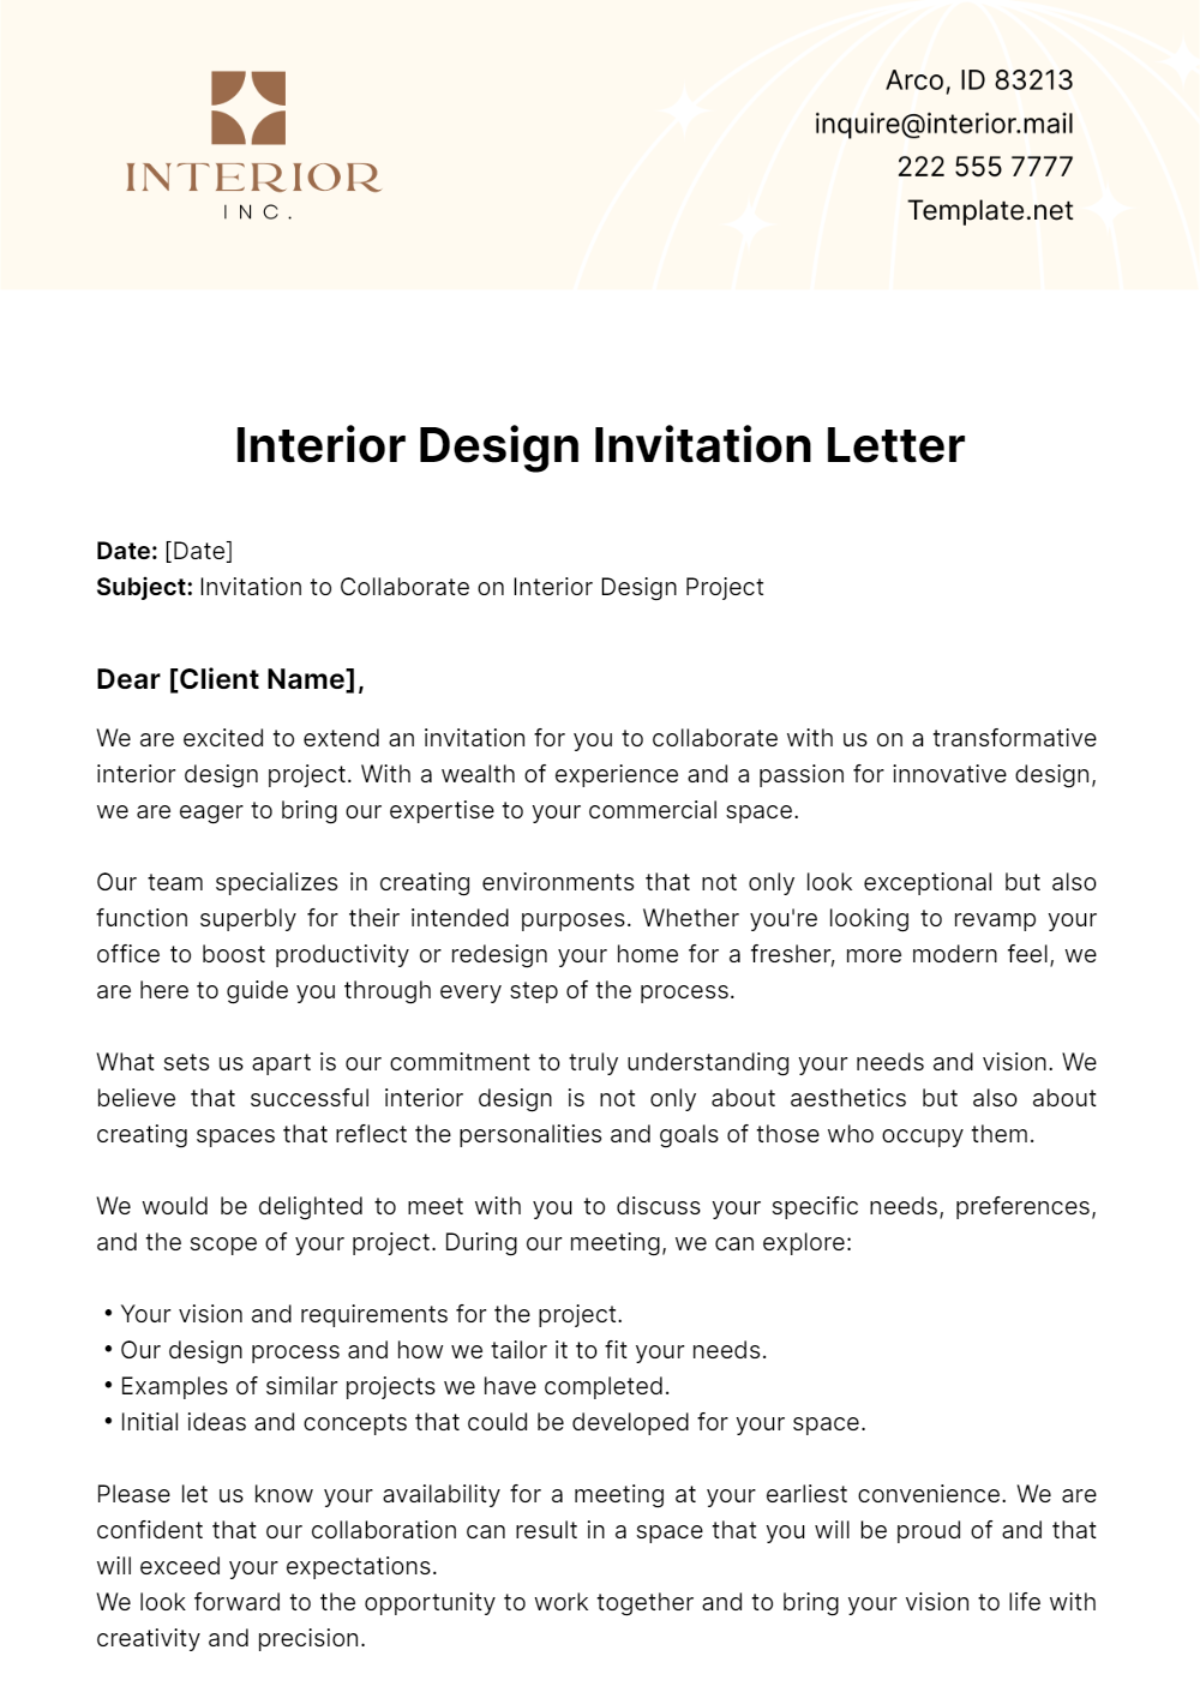 Interior Design Invitation Letter Template